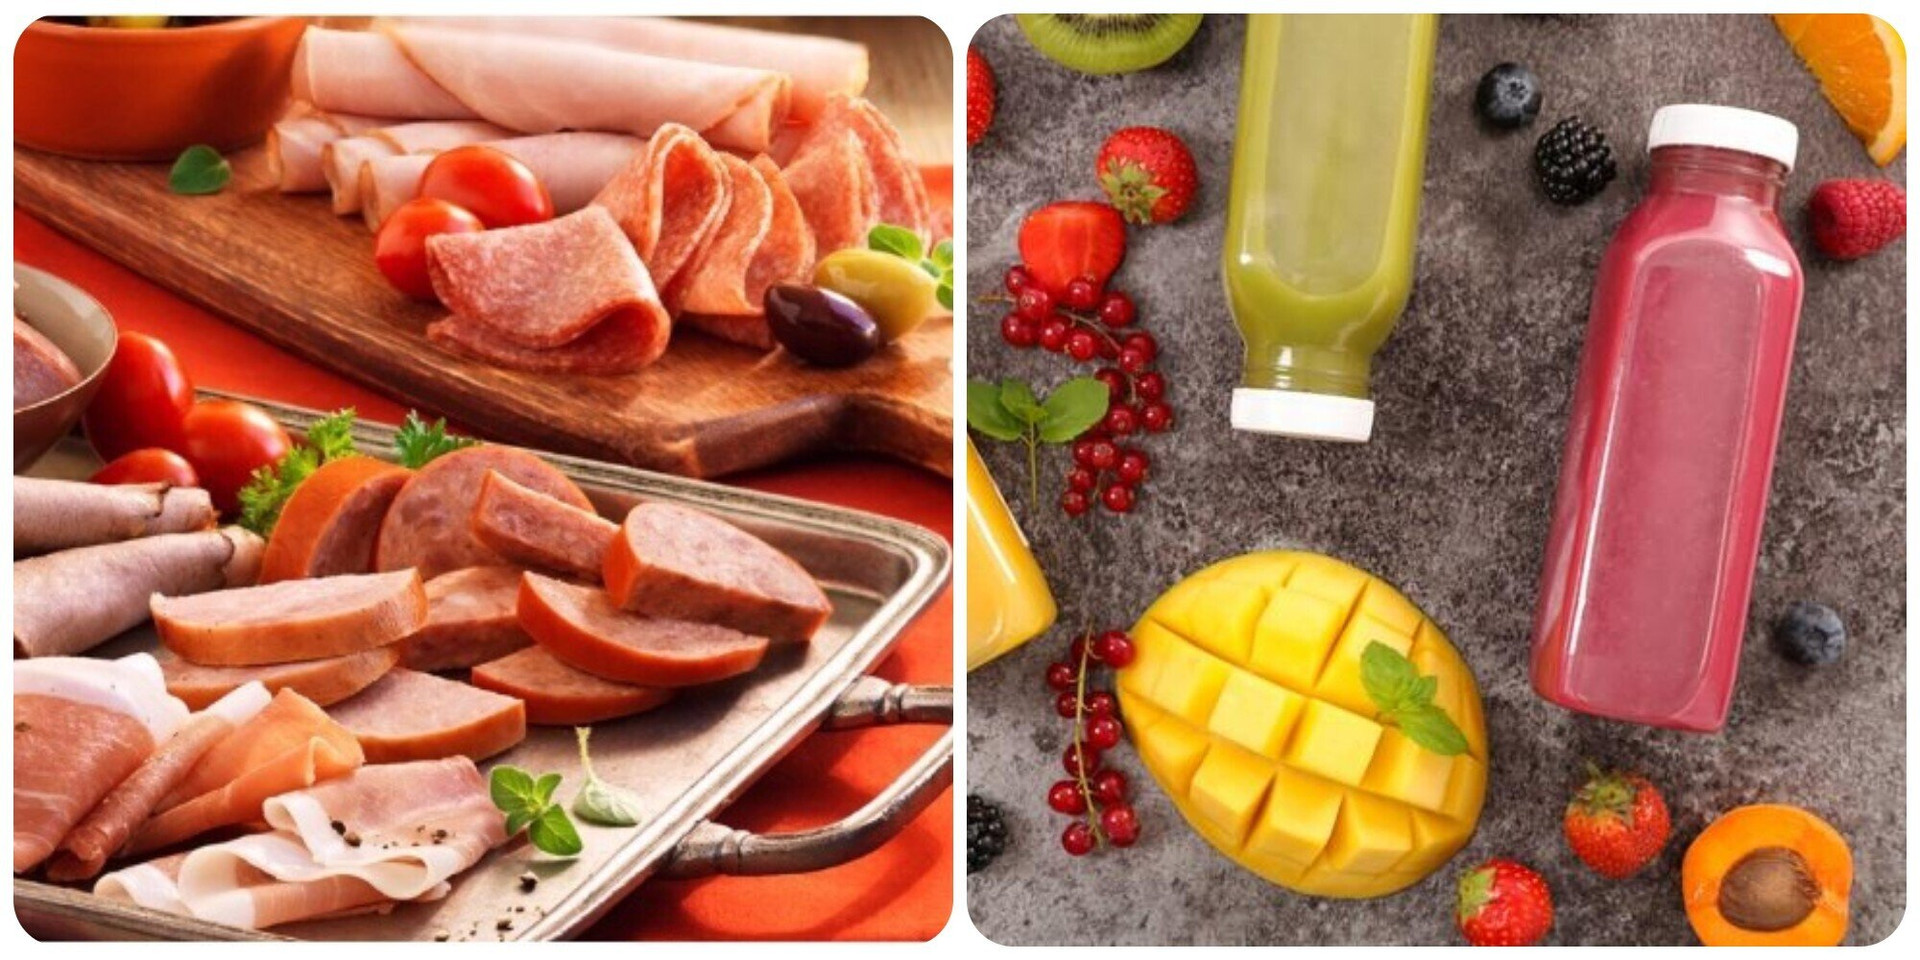 Thịt chế biến sẵn và nước ép trái cây là hai món được khuyên không nên dùng vào bữa sáng